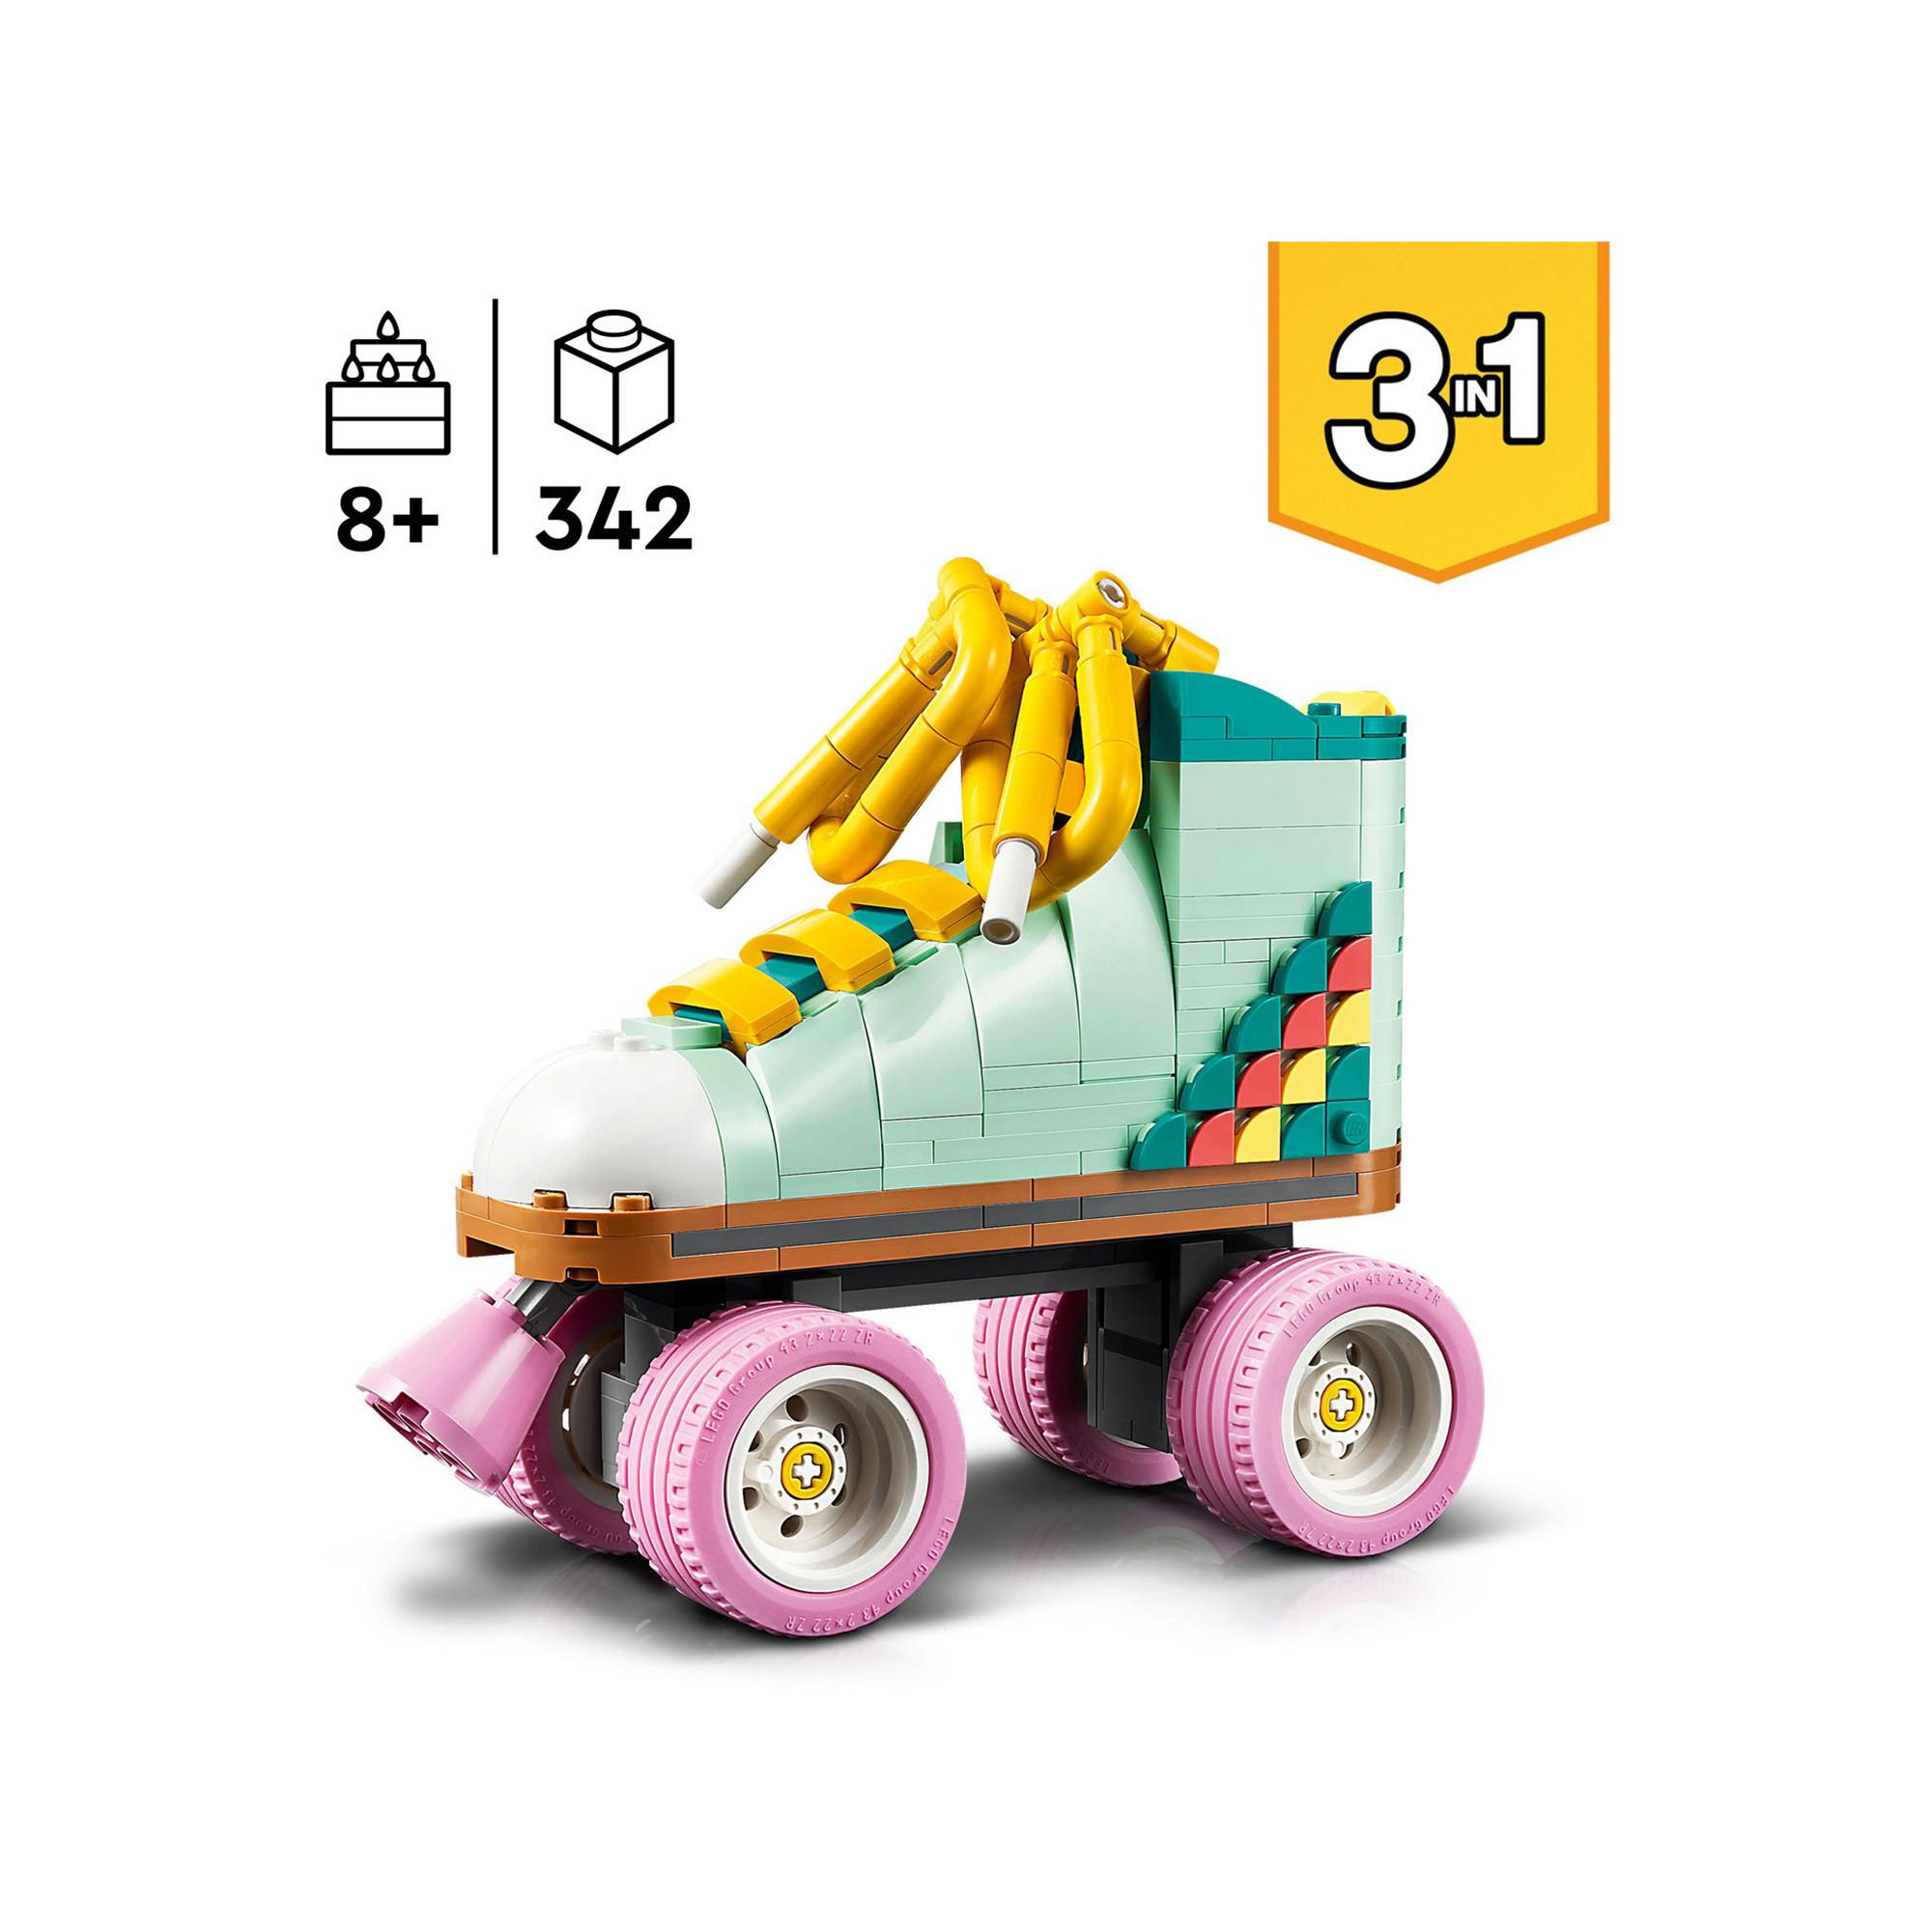 LEGO®  31148 Les patins à roulettes rétro 